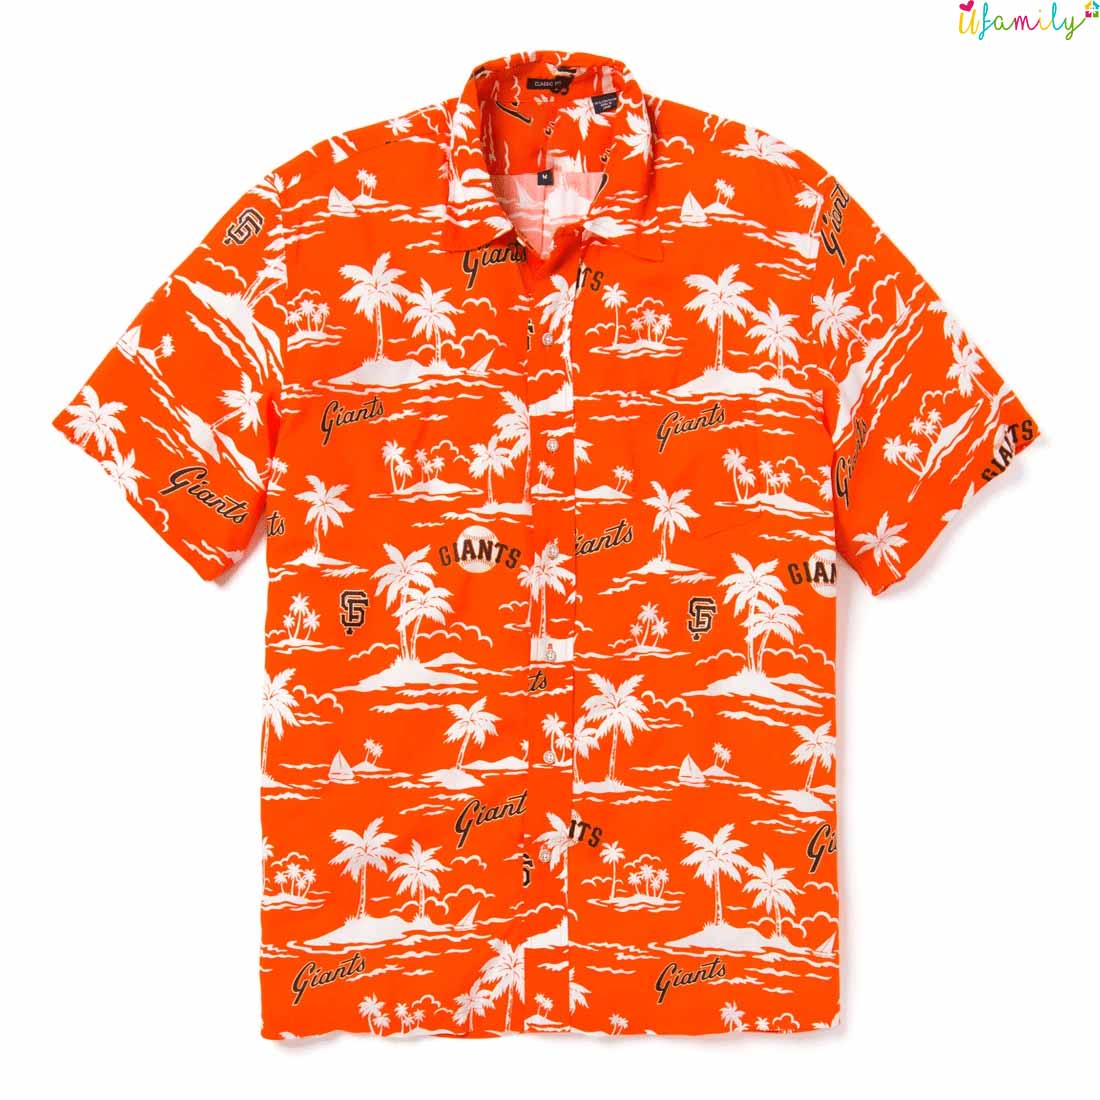 San Francisco Giants Orange Hawaiian Shirt